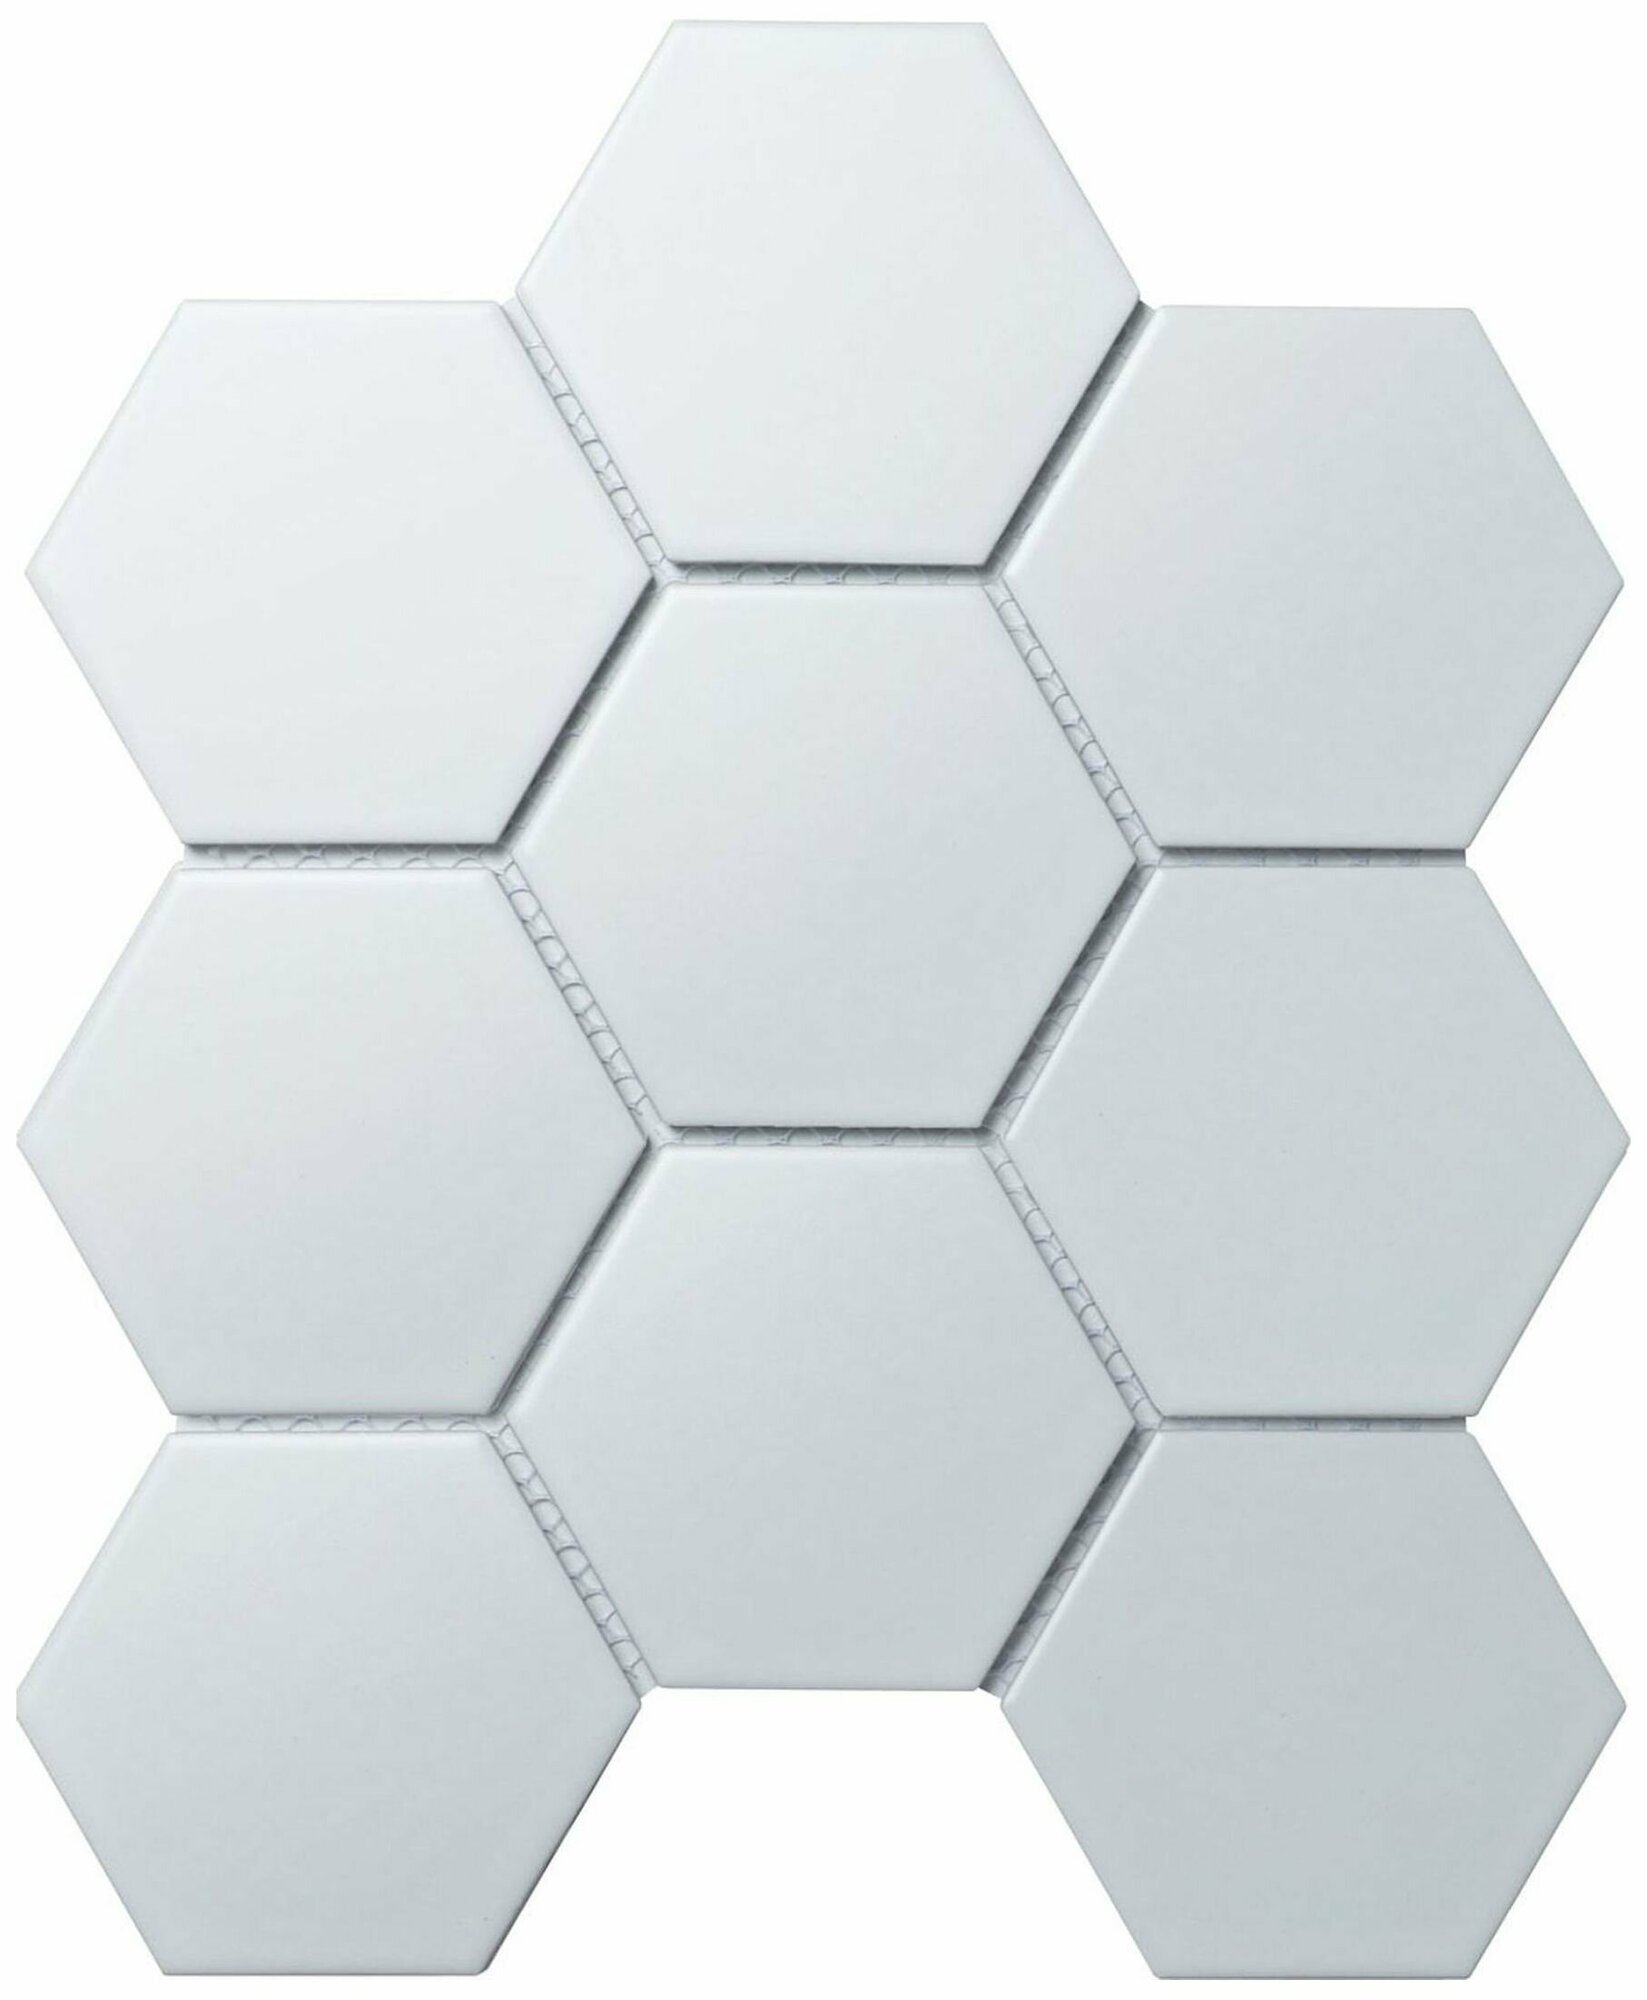 Керамическая мозаика StarMosaic Hexagon big белая 29,5х25,6 см